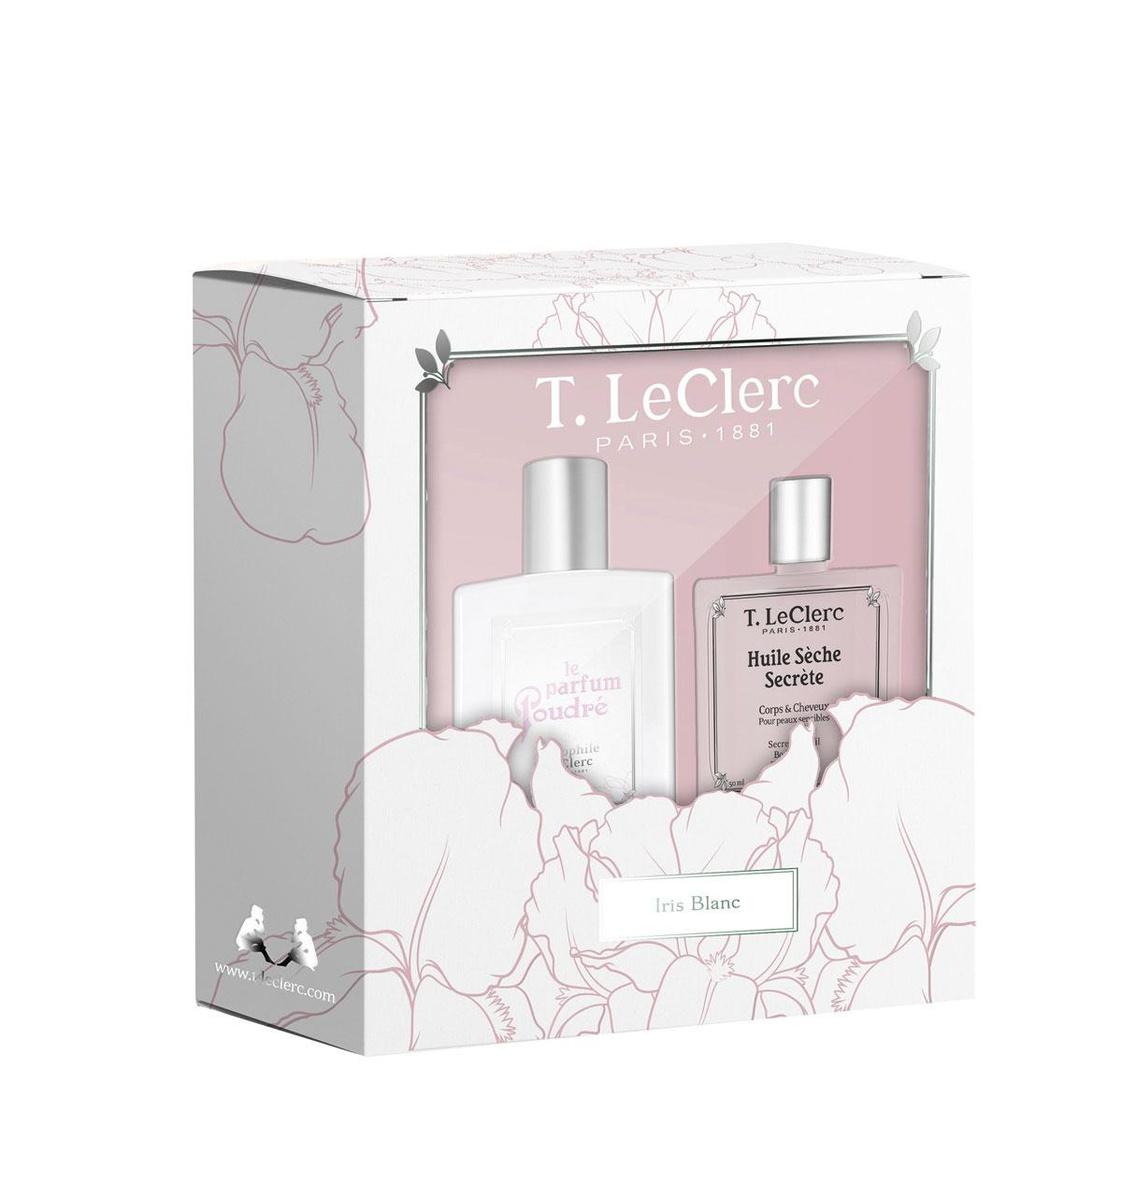 Coffret Parfum Poudré Iris Blanc & Huile Sèche Secrète, T.LeClerc